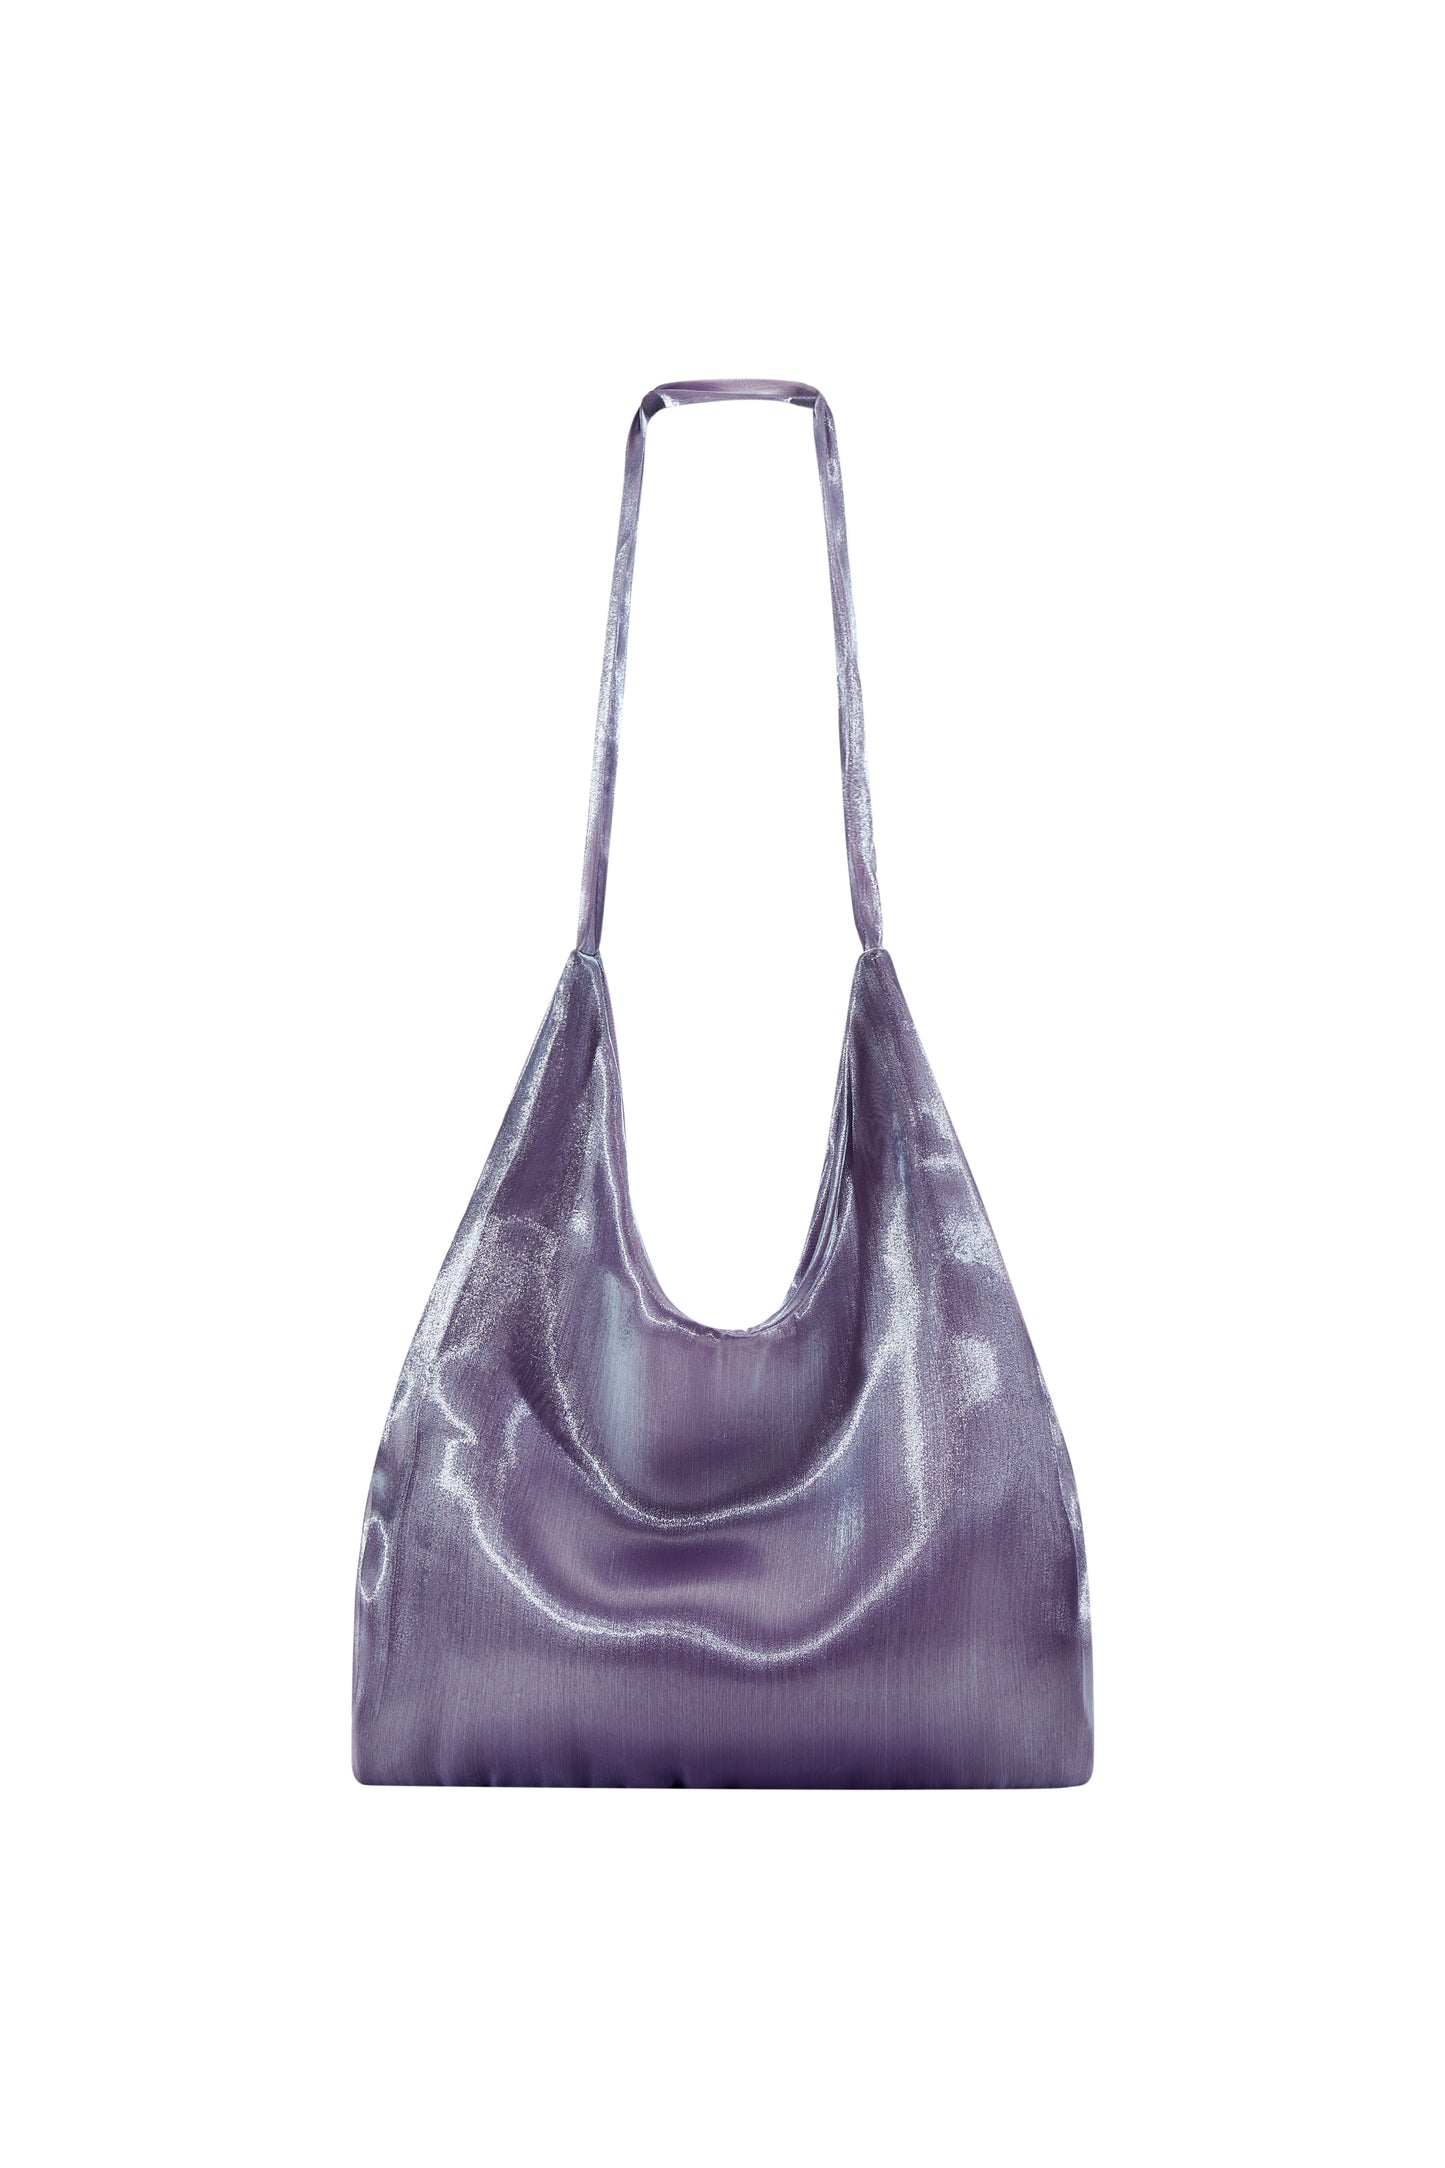 TENERA Ballet One-Shoulder Bag/Gradient Purple